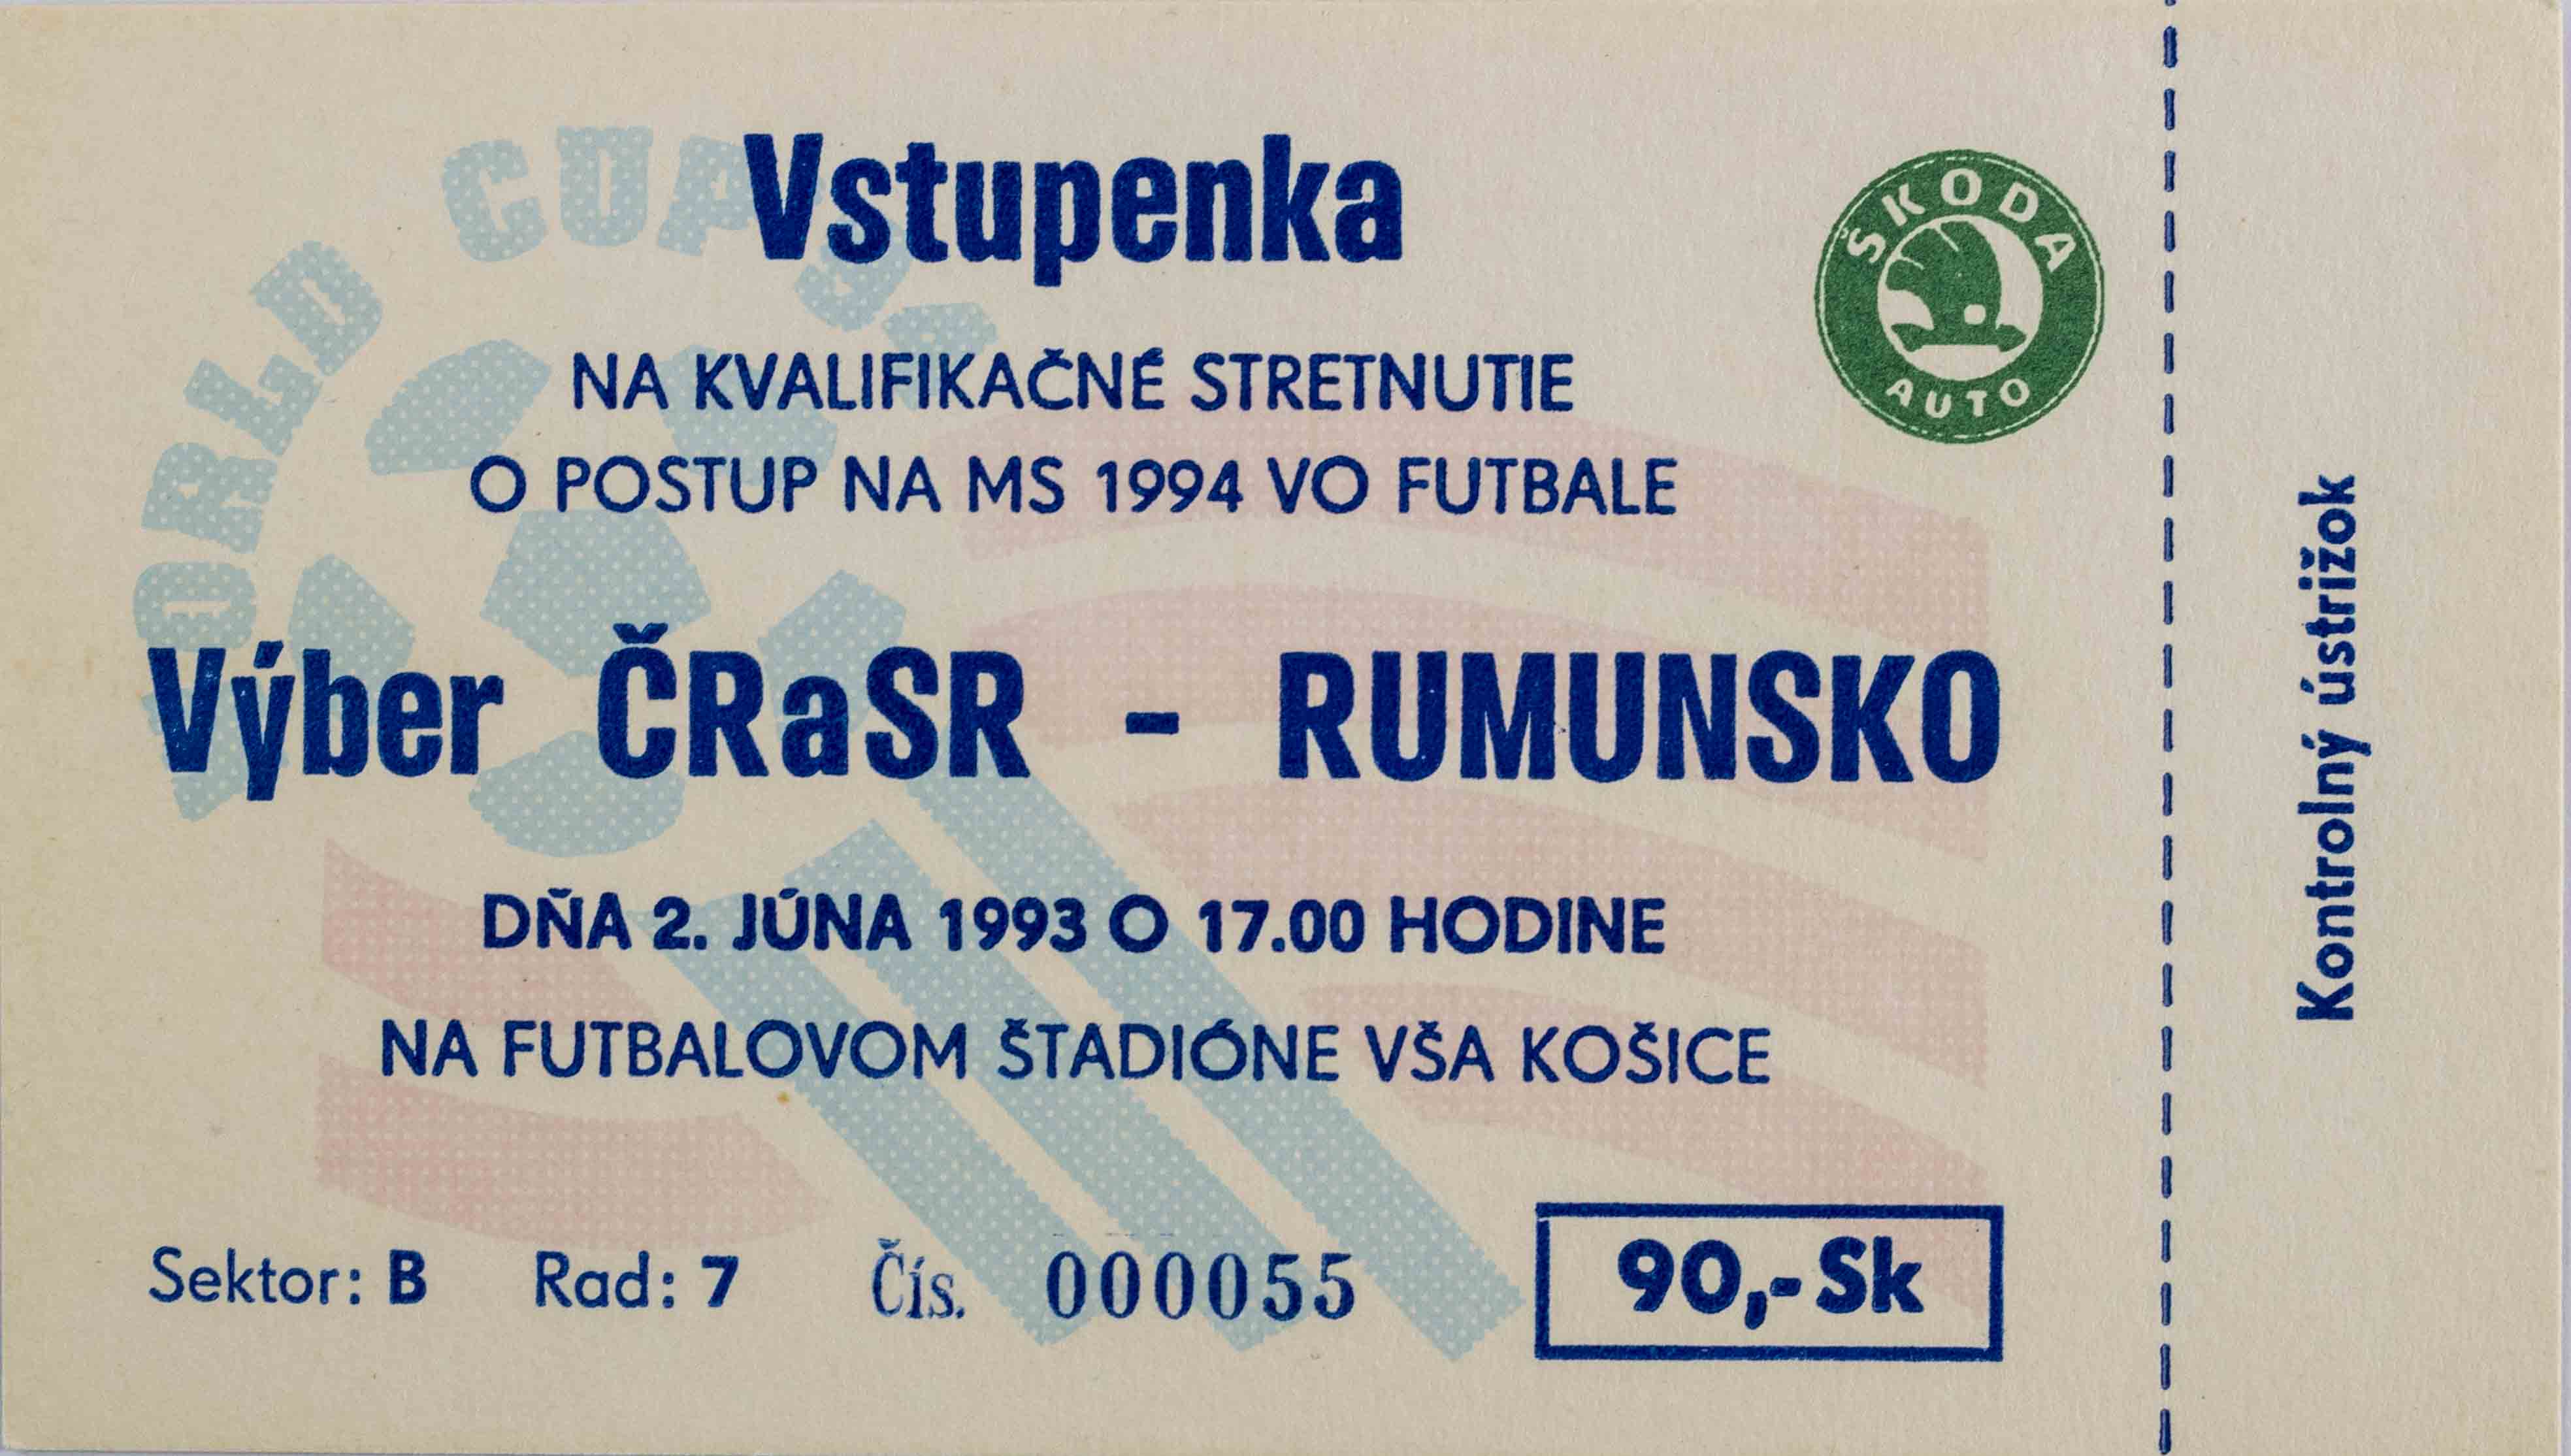 Vstupenka ČR a SR v. Rumunsko, QWM 1994, Košice, 1993, 2